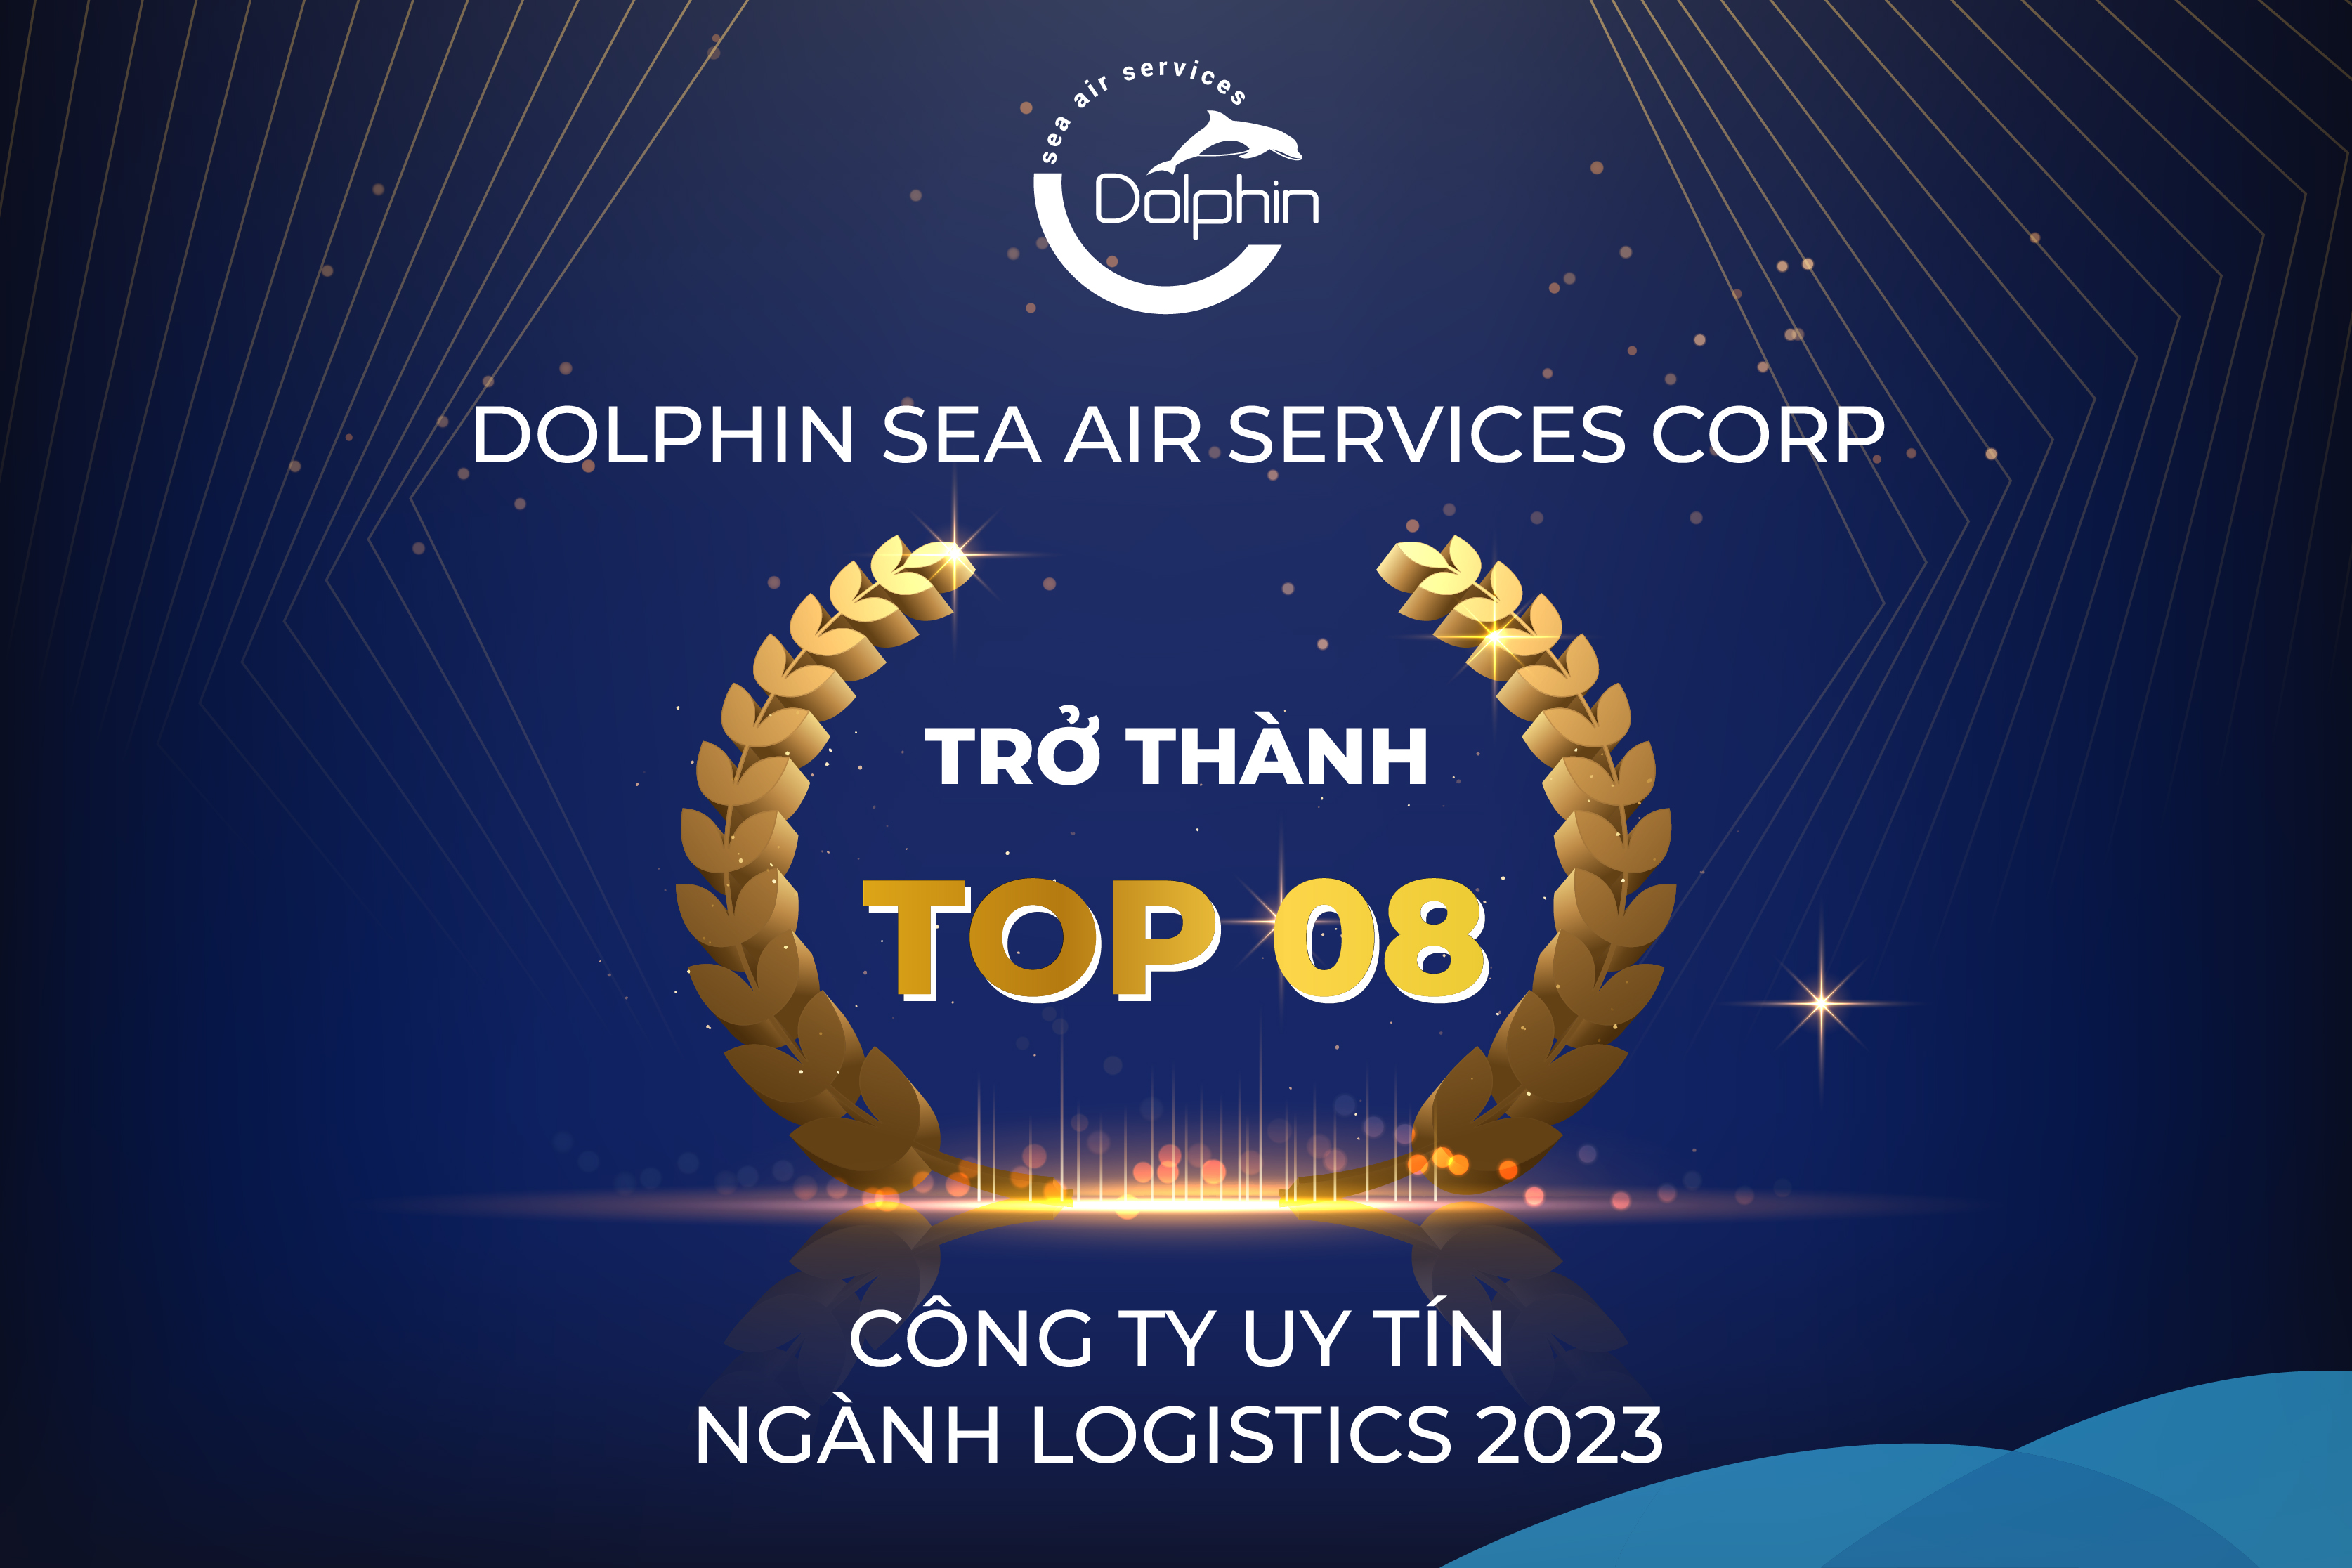 Xuất sắc tăng 2 bậc, Dolphin Sea Air Services Corporation thuộc Top 8 Công ty uy tín ngành Logistics 2023